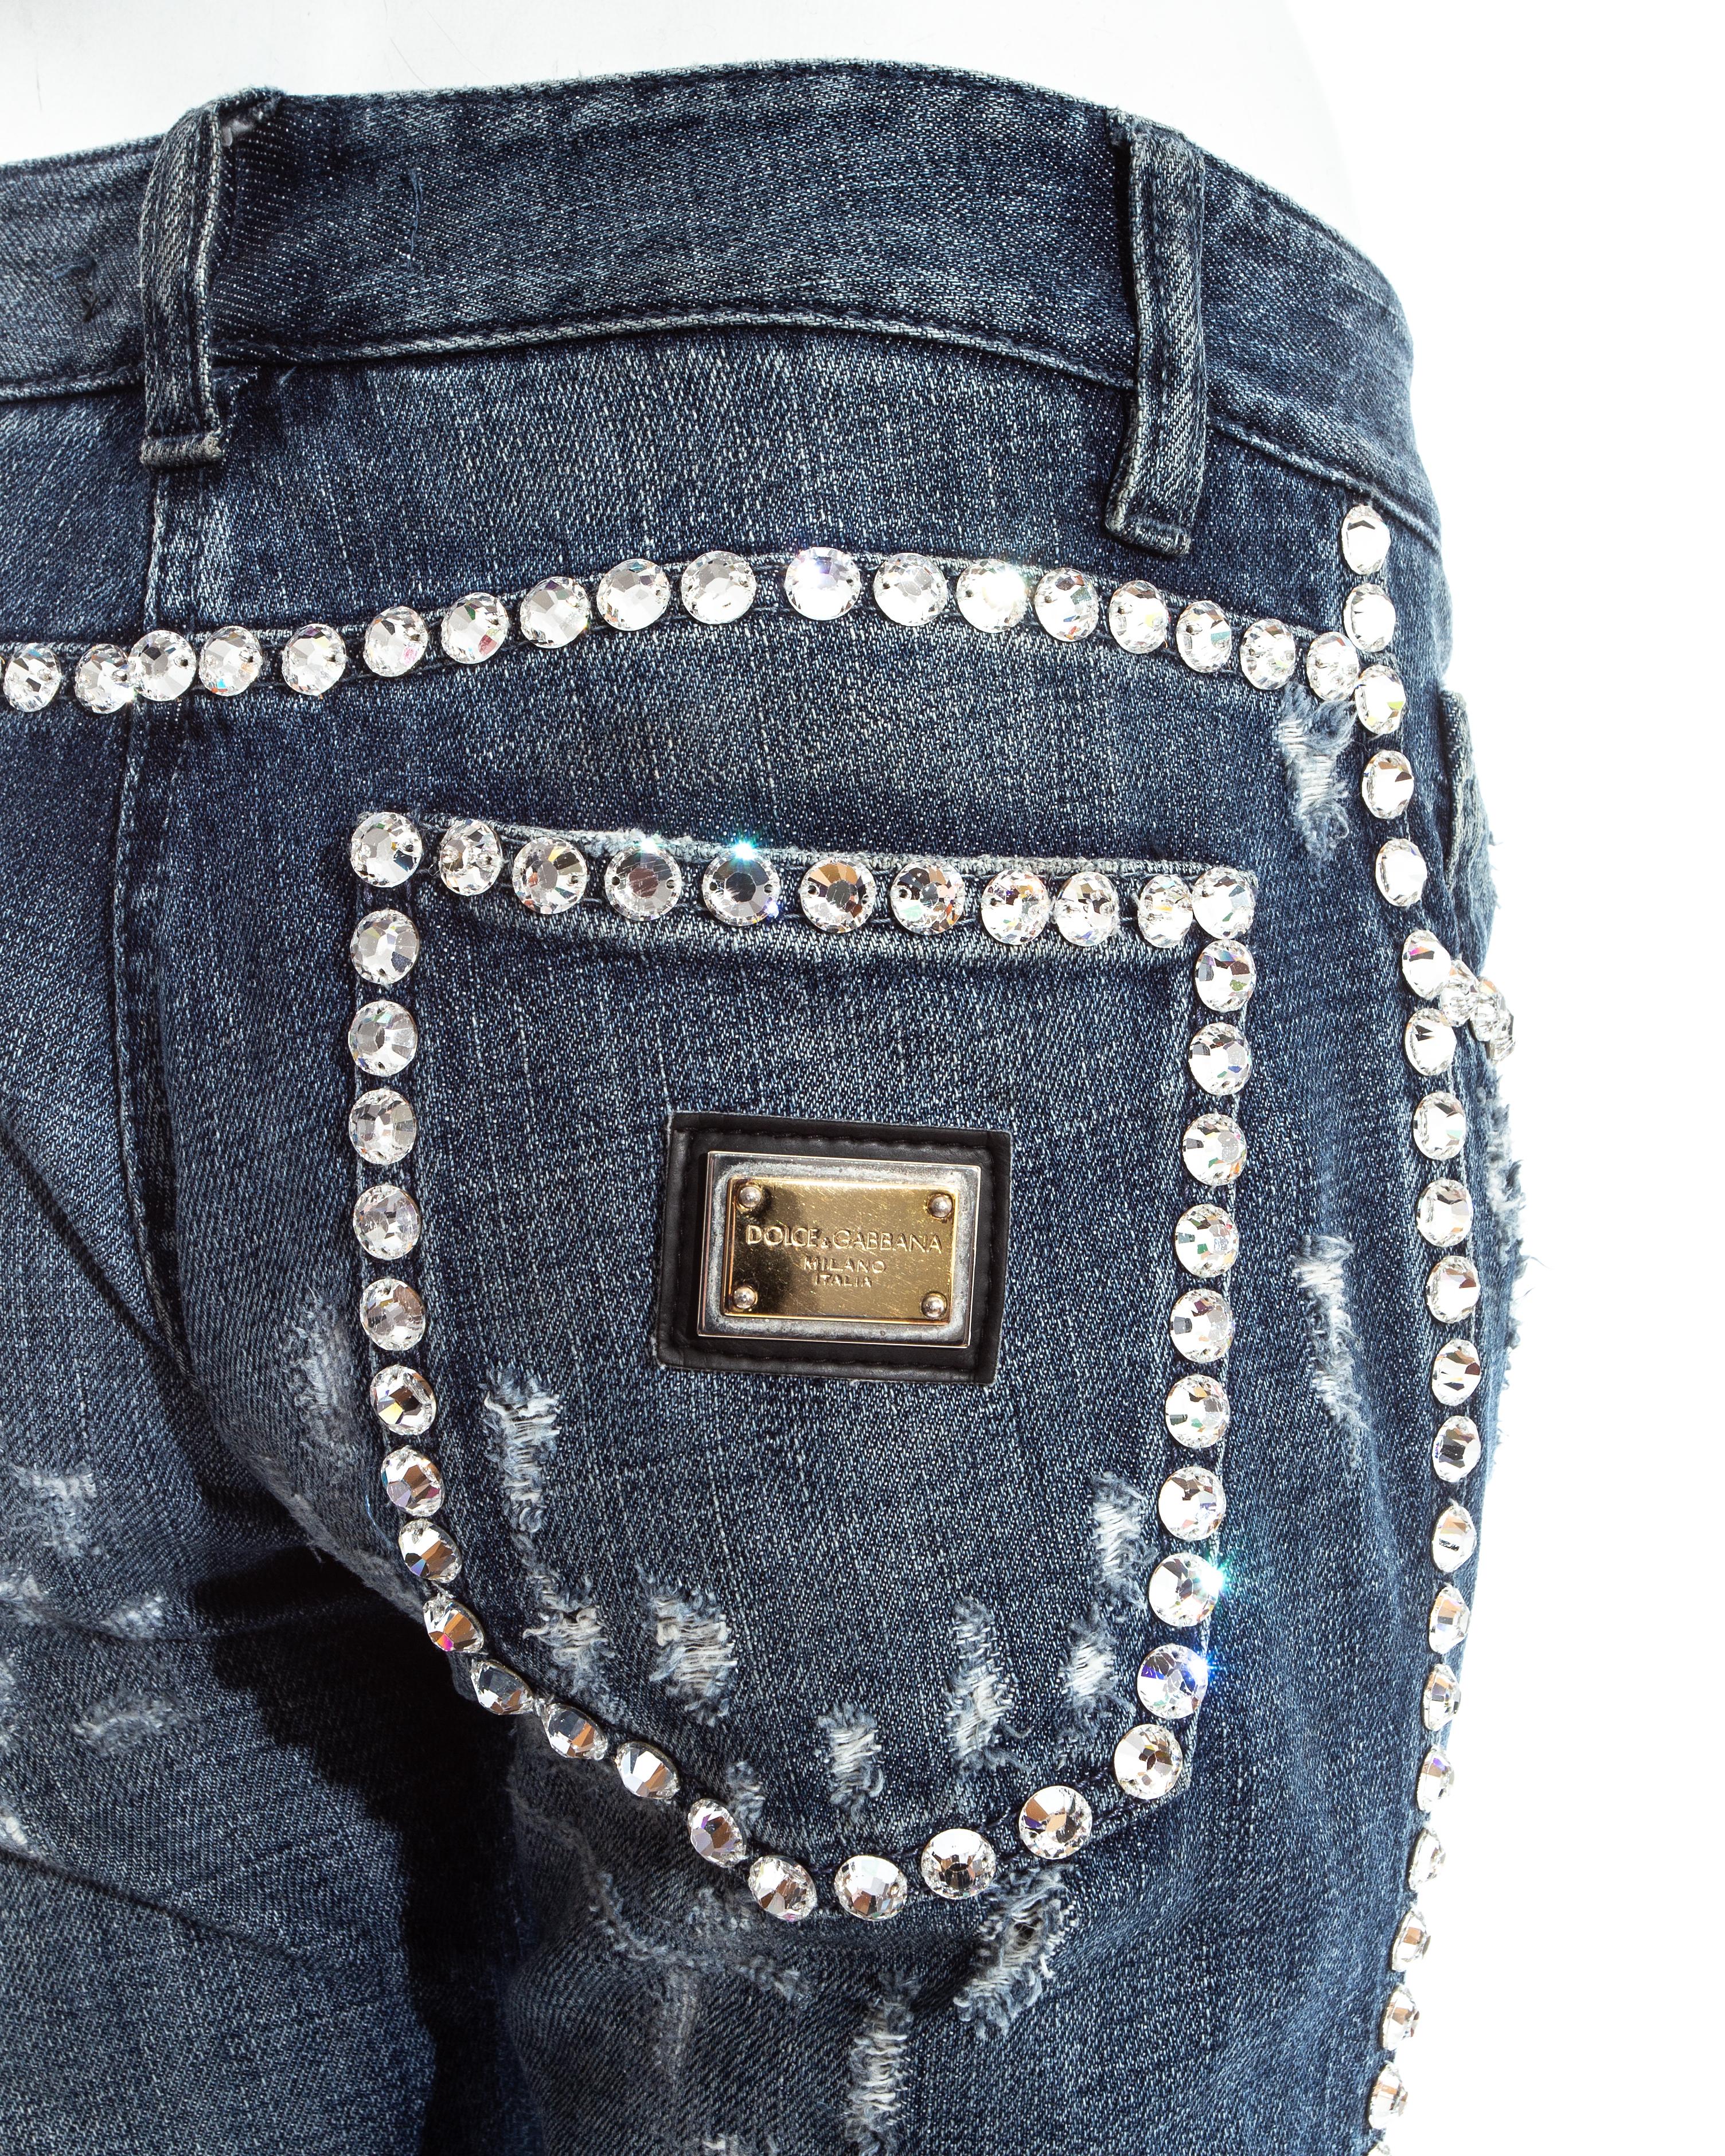 Dolce & Gabbana blue denim embellished distressed jeans, ss 2001 1